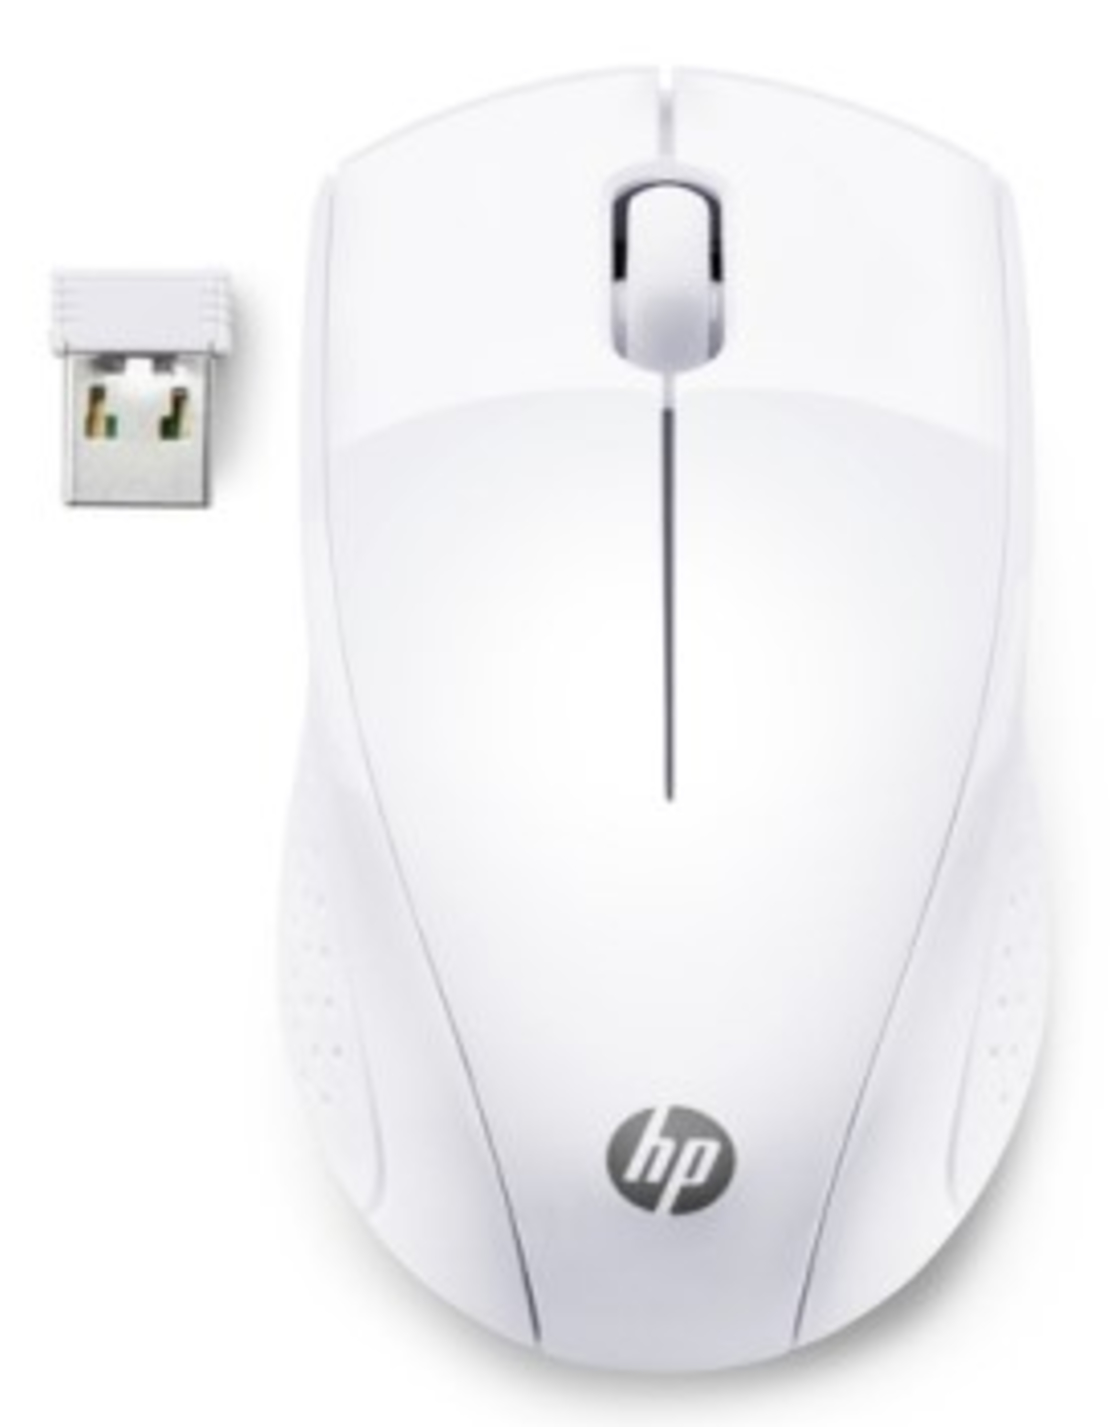 עכבר אלחוטי HP wireless Mouse 220 צבע לבן